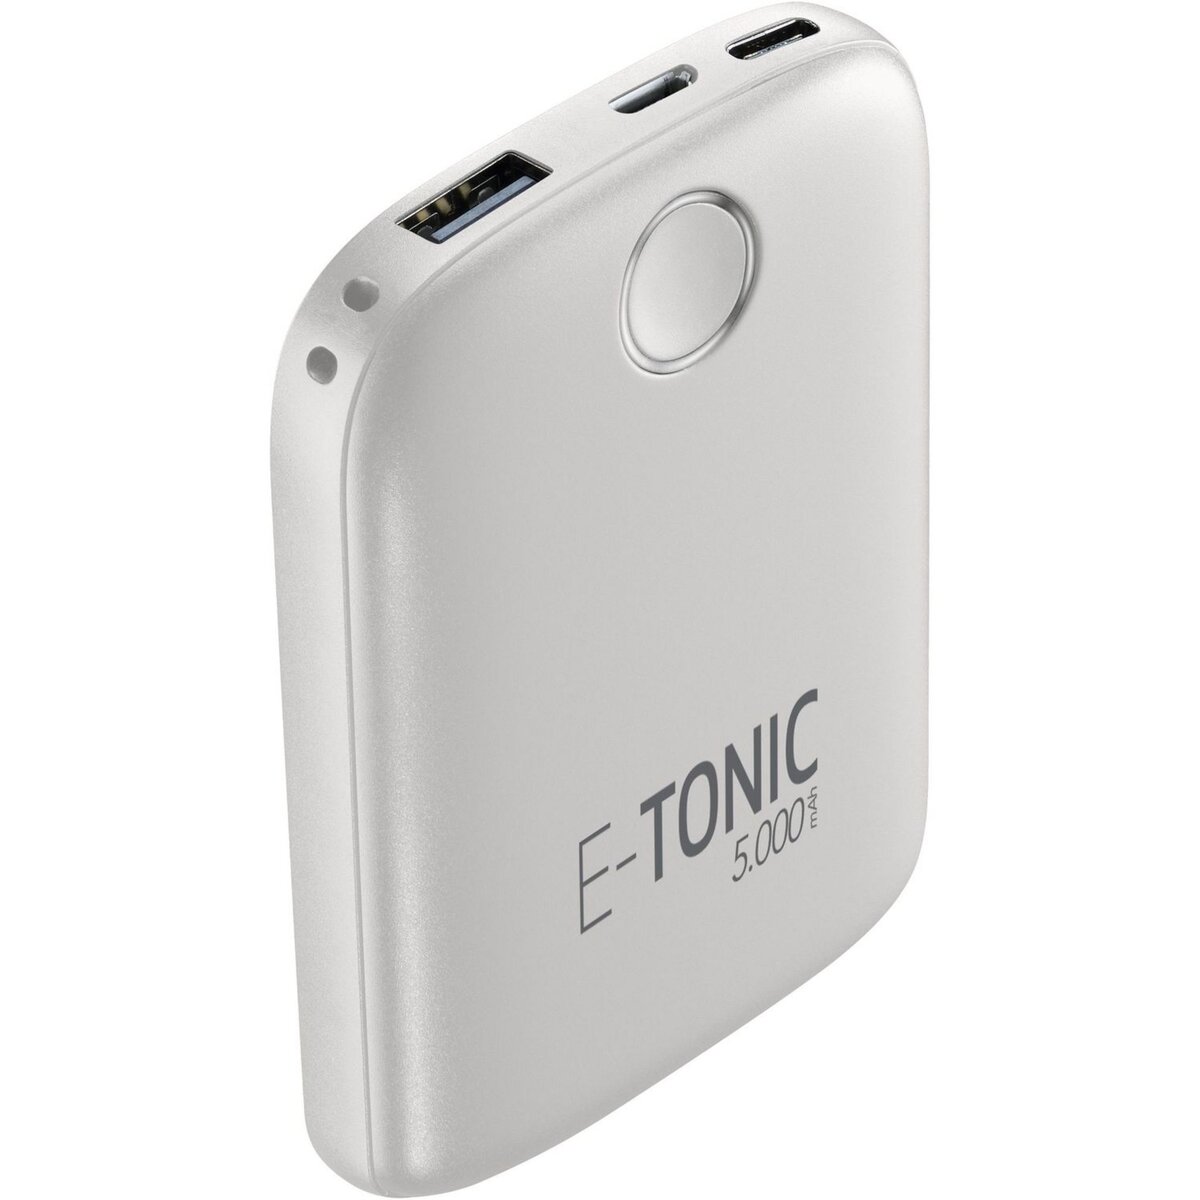 CELLULARLINE Batterie de secours 5000 mAh E-Tonic - Blanc